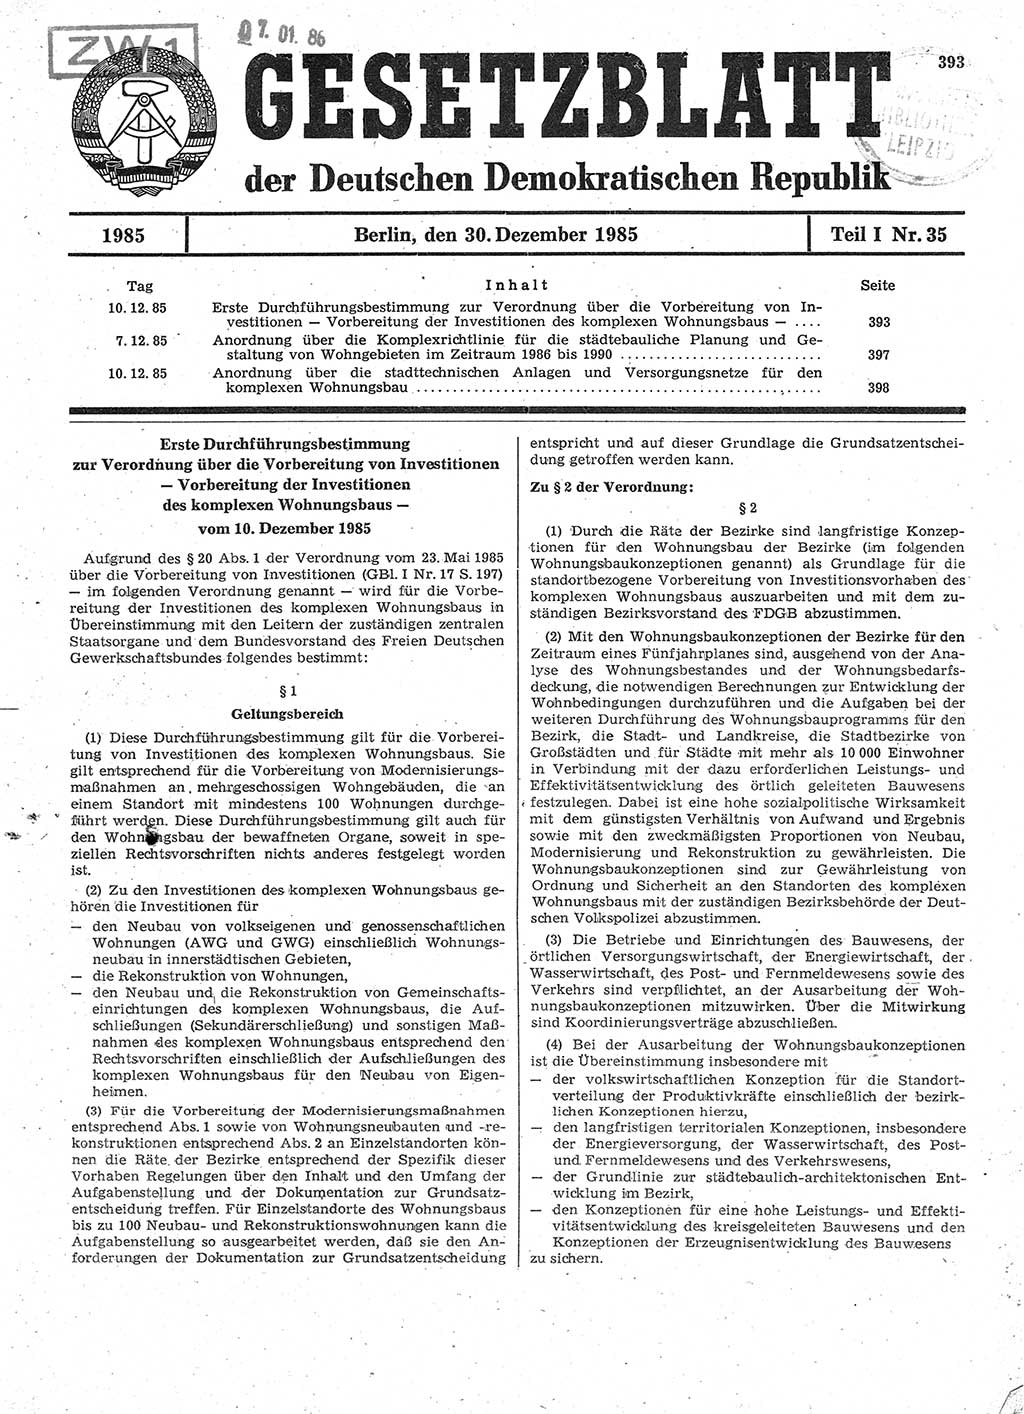 Gesetzblatt (GBl.) der Deutschen Demokratischen Republik (DDR) Teil Ⅰ 1985, Seite 393 (GBl. DDR Ⅰ 1985, S. 393)